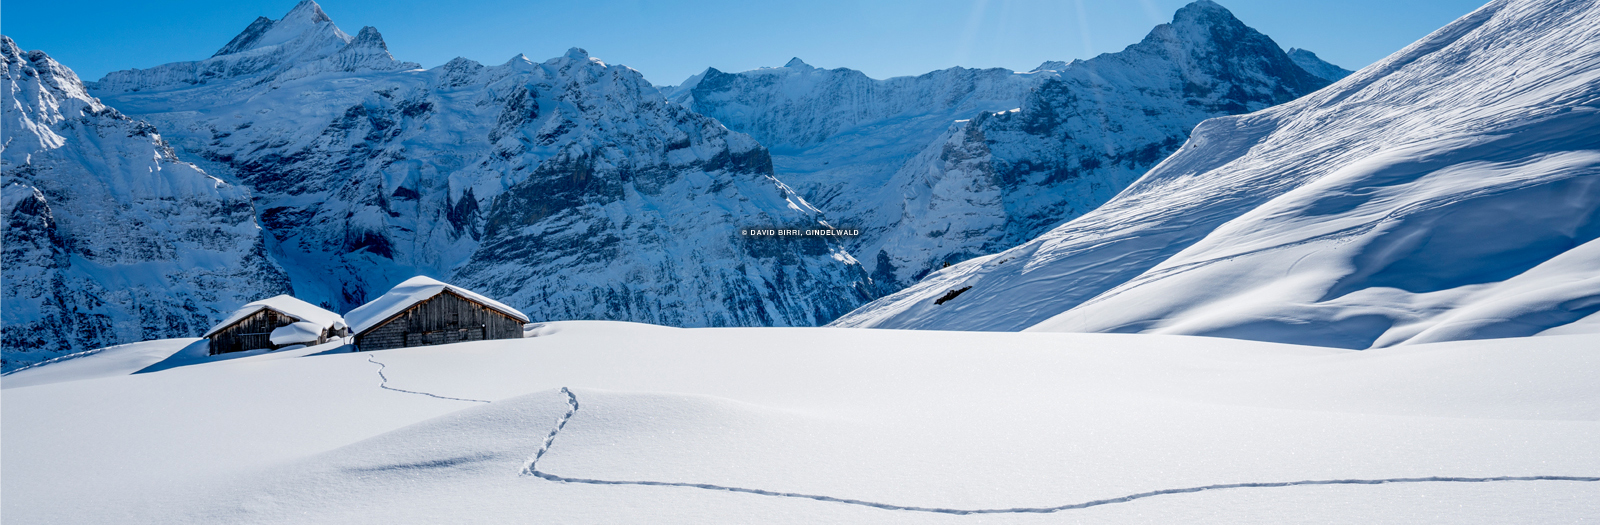 Grindelwald | Jungfrau Region, Switzerland